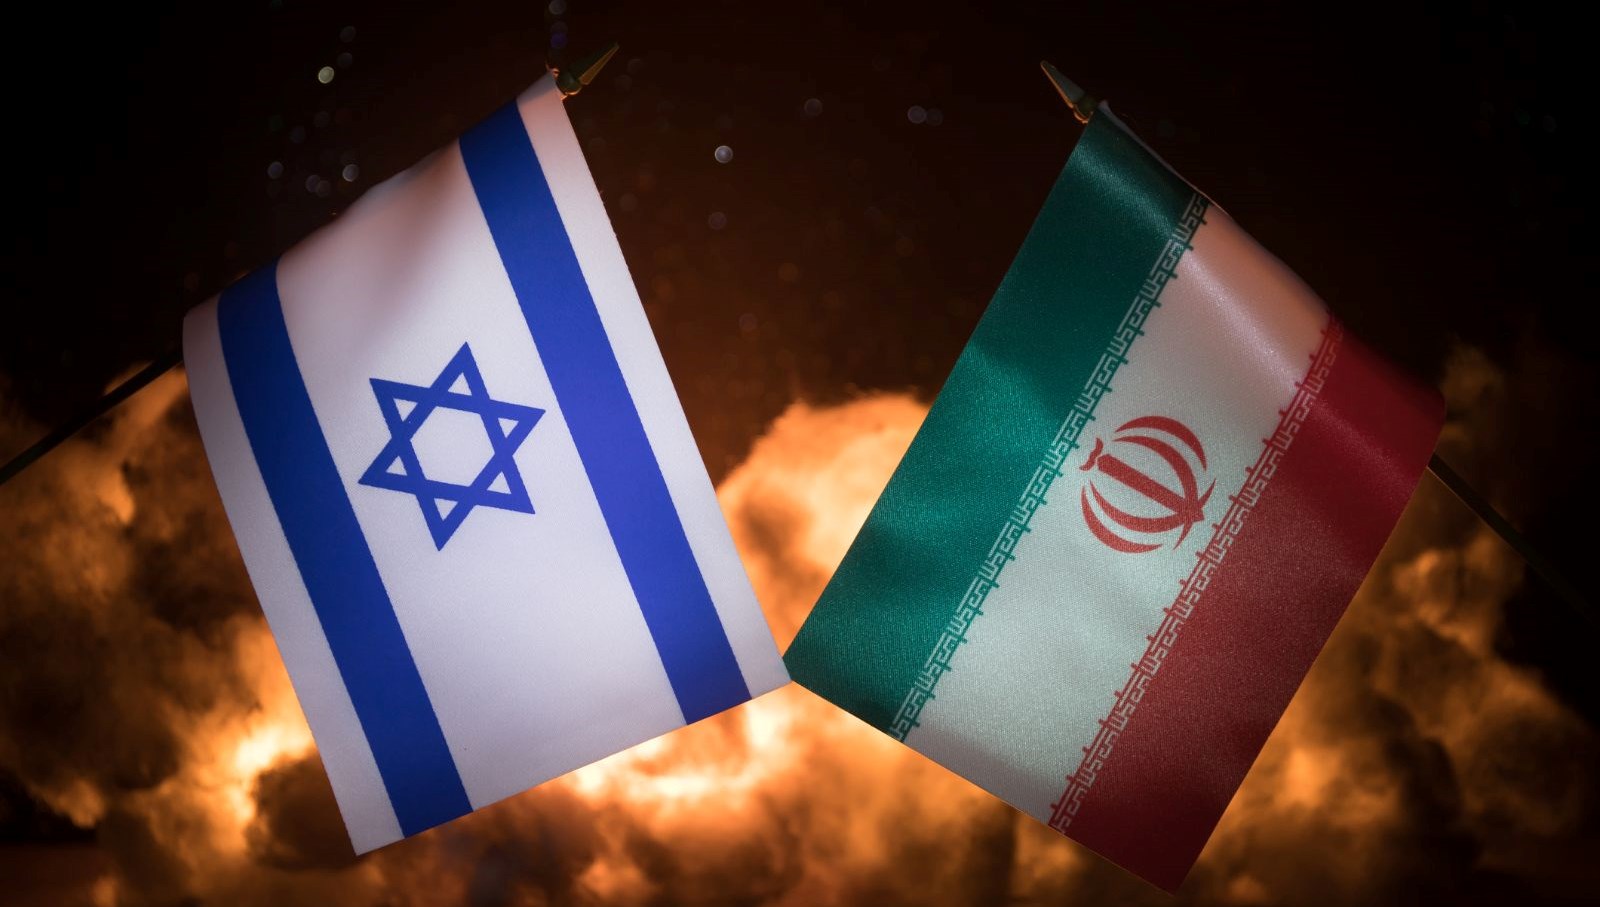 İranlı yetkiliden dikkat çeken açıklama: “İsrail’in varlığına son verilmeli”